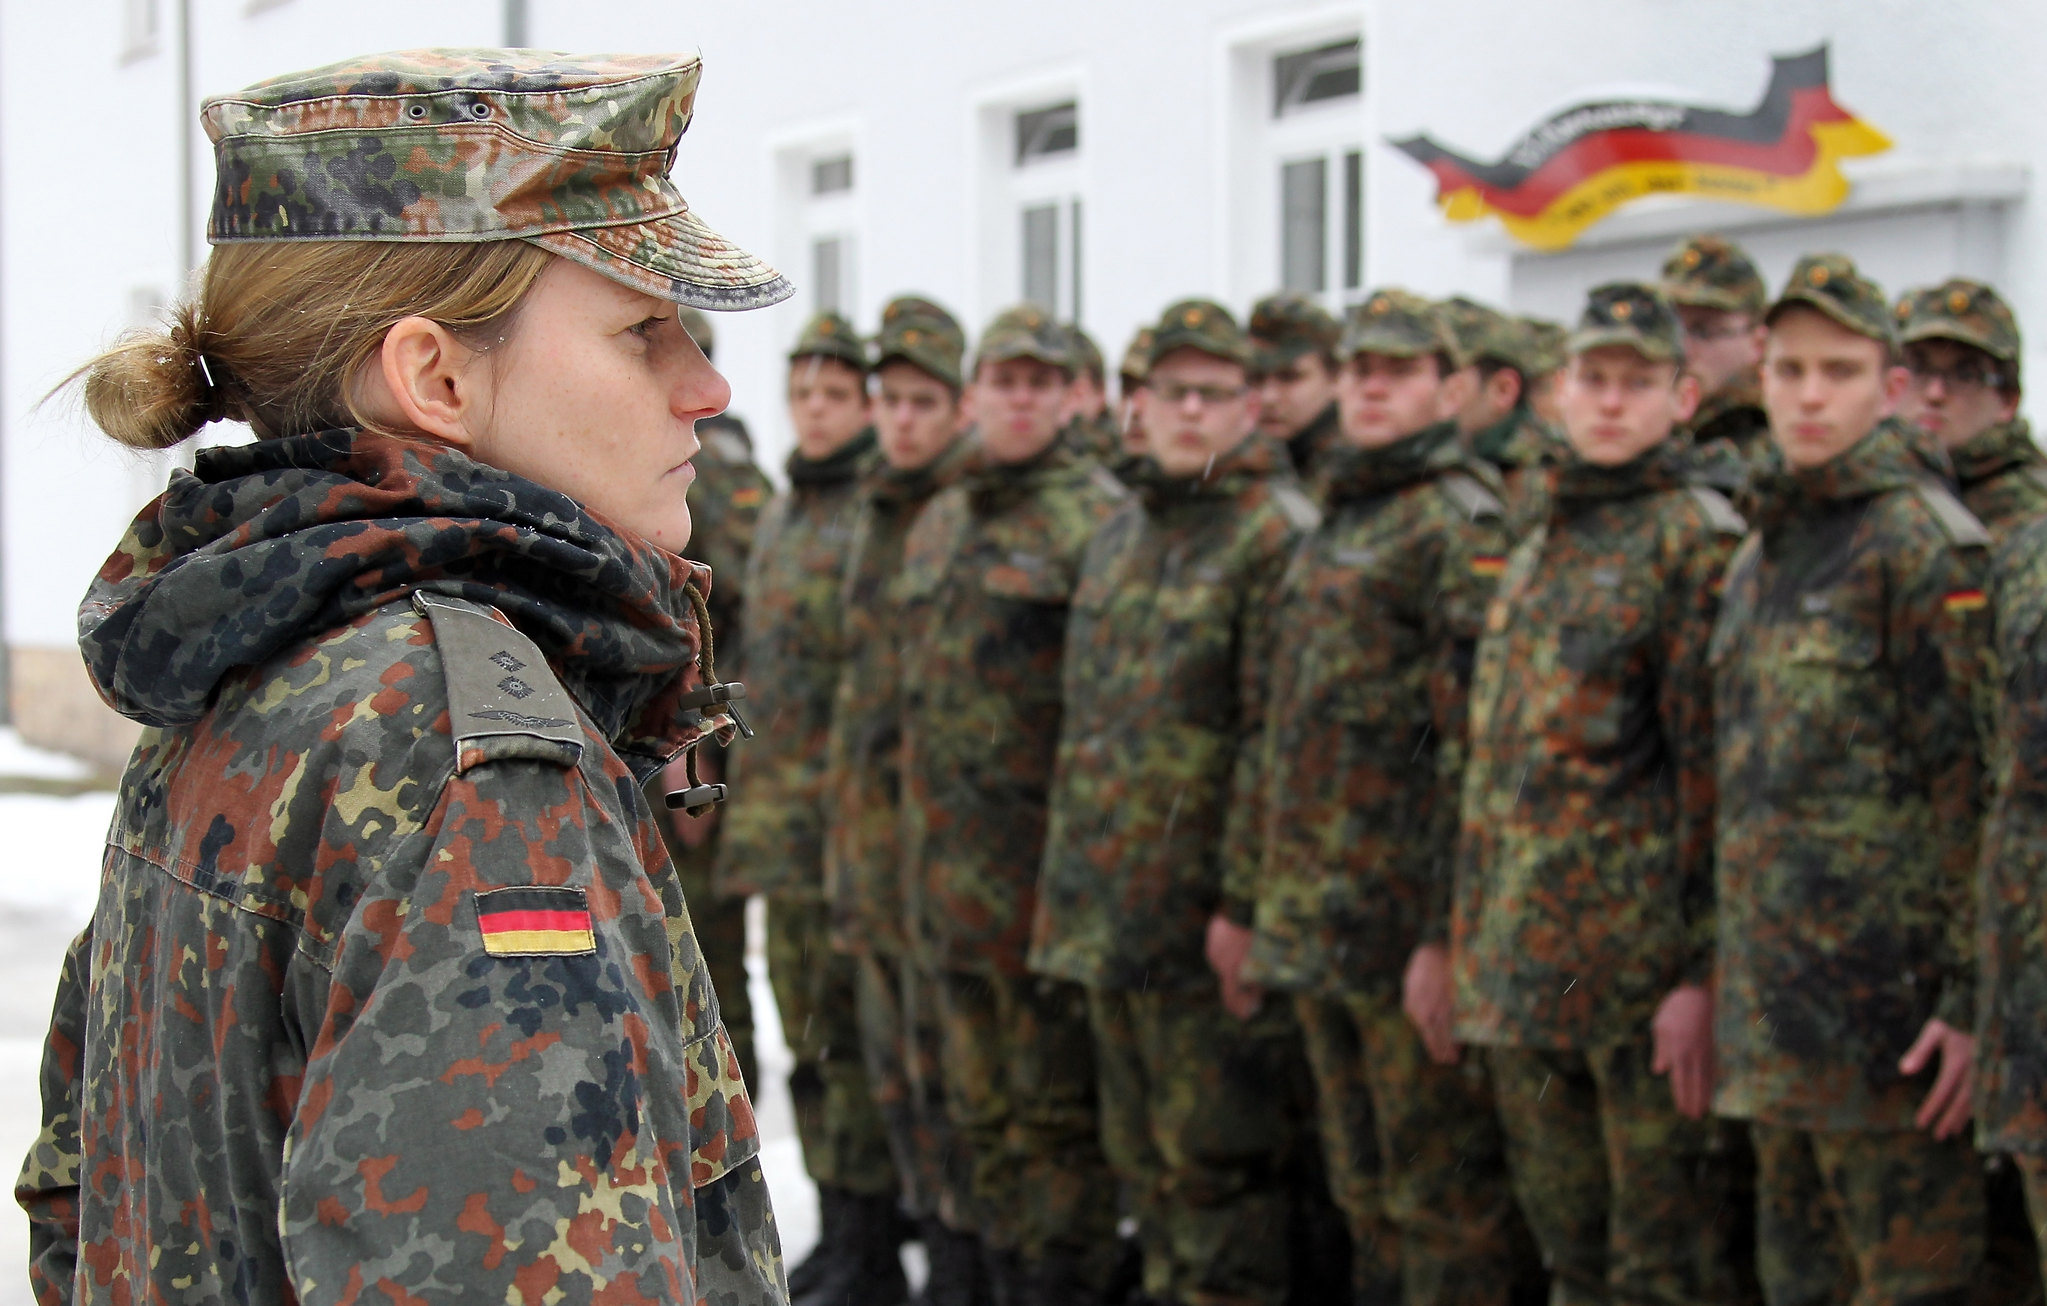 Ein Zug der letzten Wehrpflichtigen der Bundeswehr im Jahr 2011. Diese Strukturen müssen für den Fall der Landesverteidigung wieder aufgebaut werden.